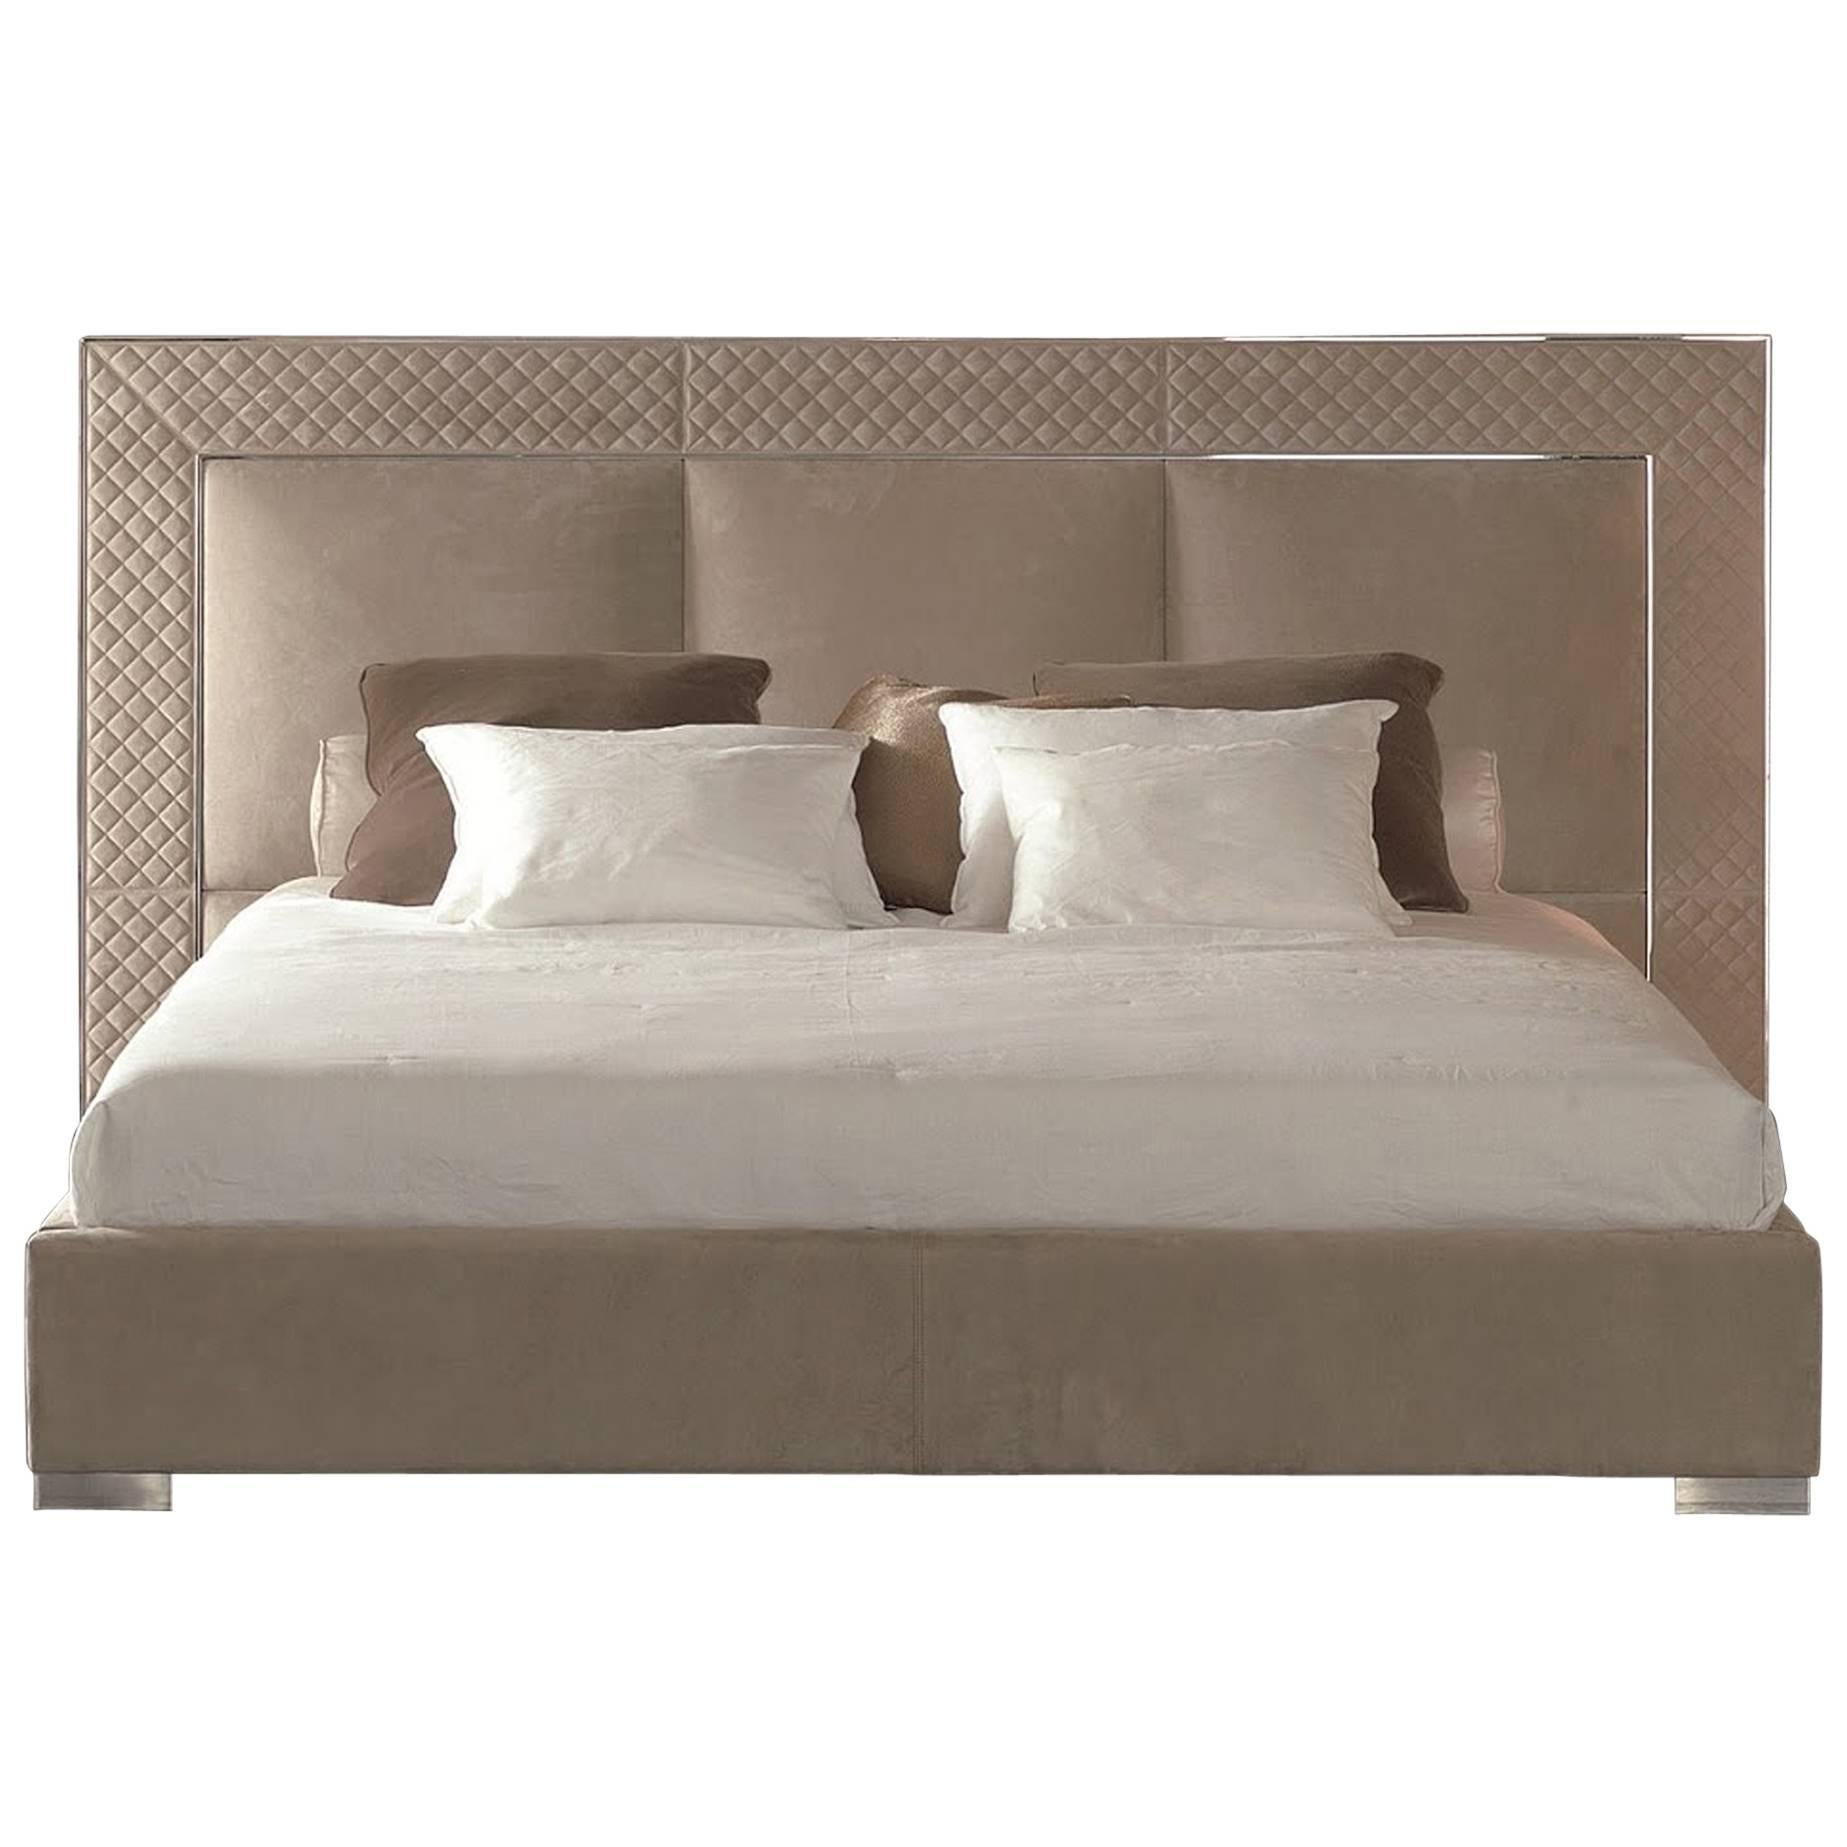 Sigma Bett mit niedrigem Kopfteil, Lederpolsterung, Bronze- oder Stahlrahmen